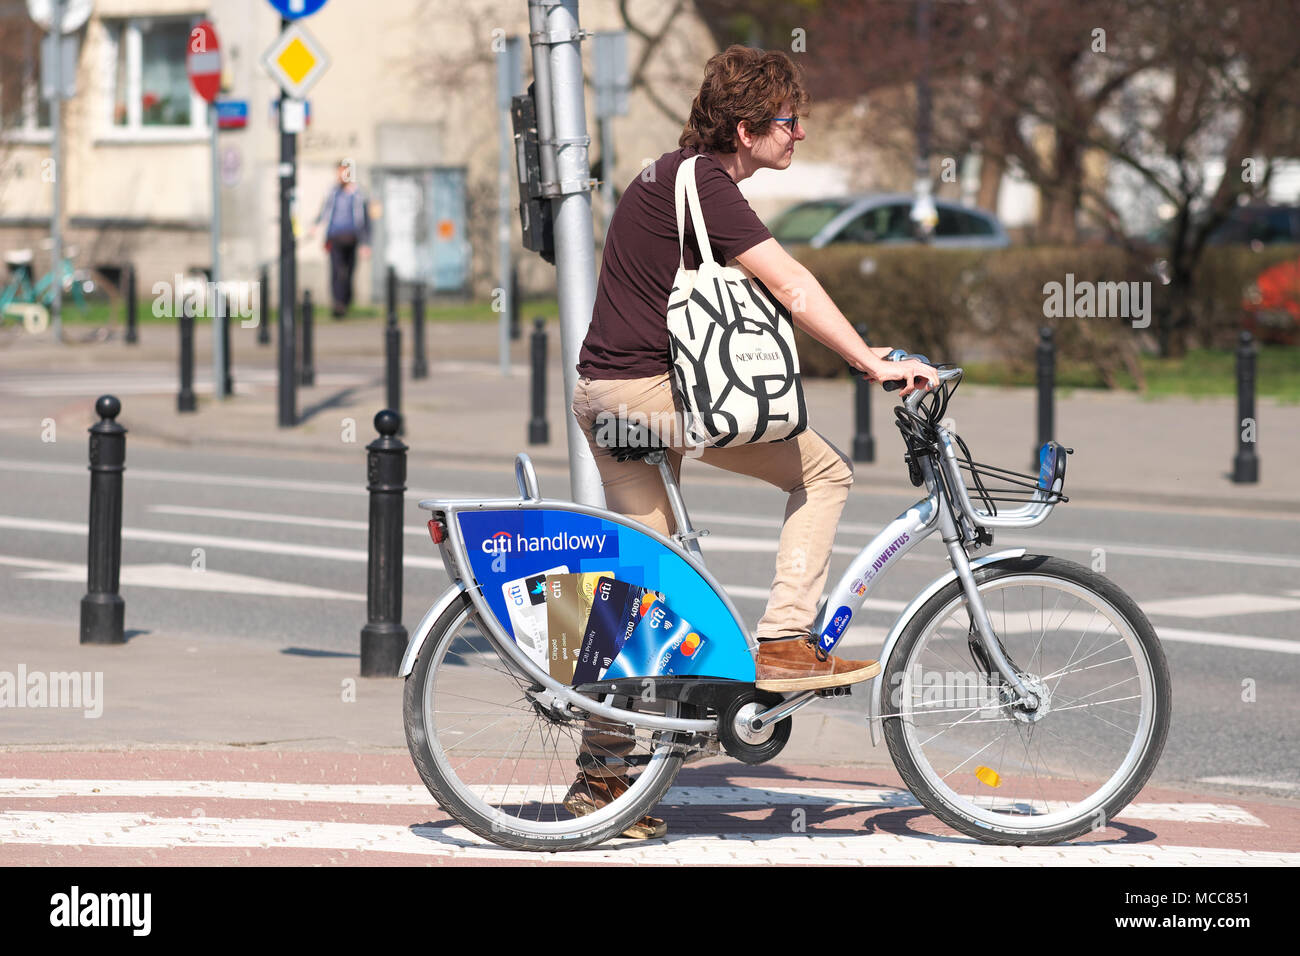 Pologne Varsovie cycliste à l'aide d'une des voitures vélos cycle Veturilo celui parrainé par Citi bank Handlowy Banque D'Images